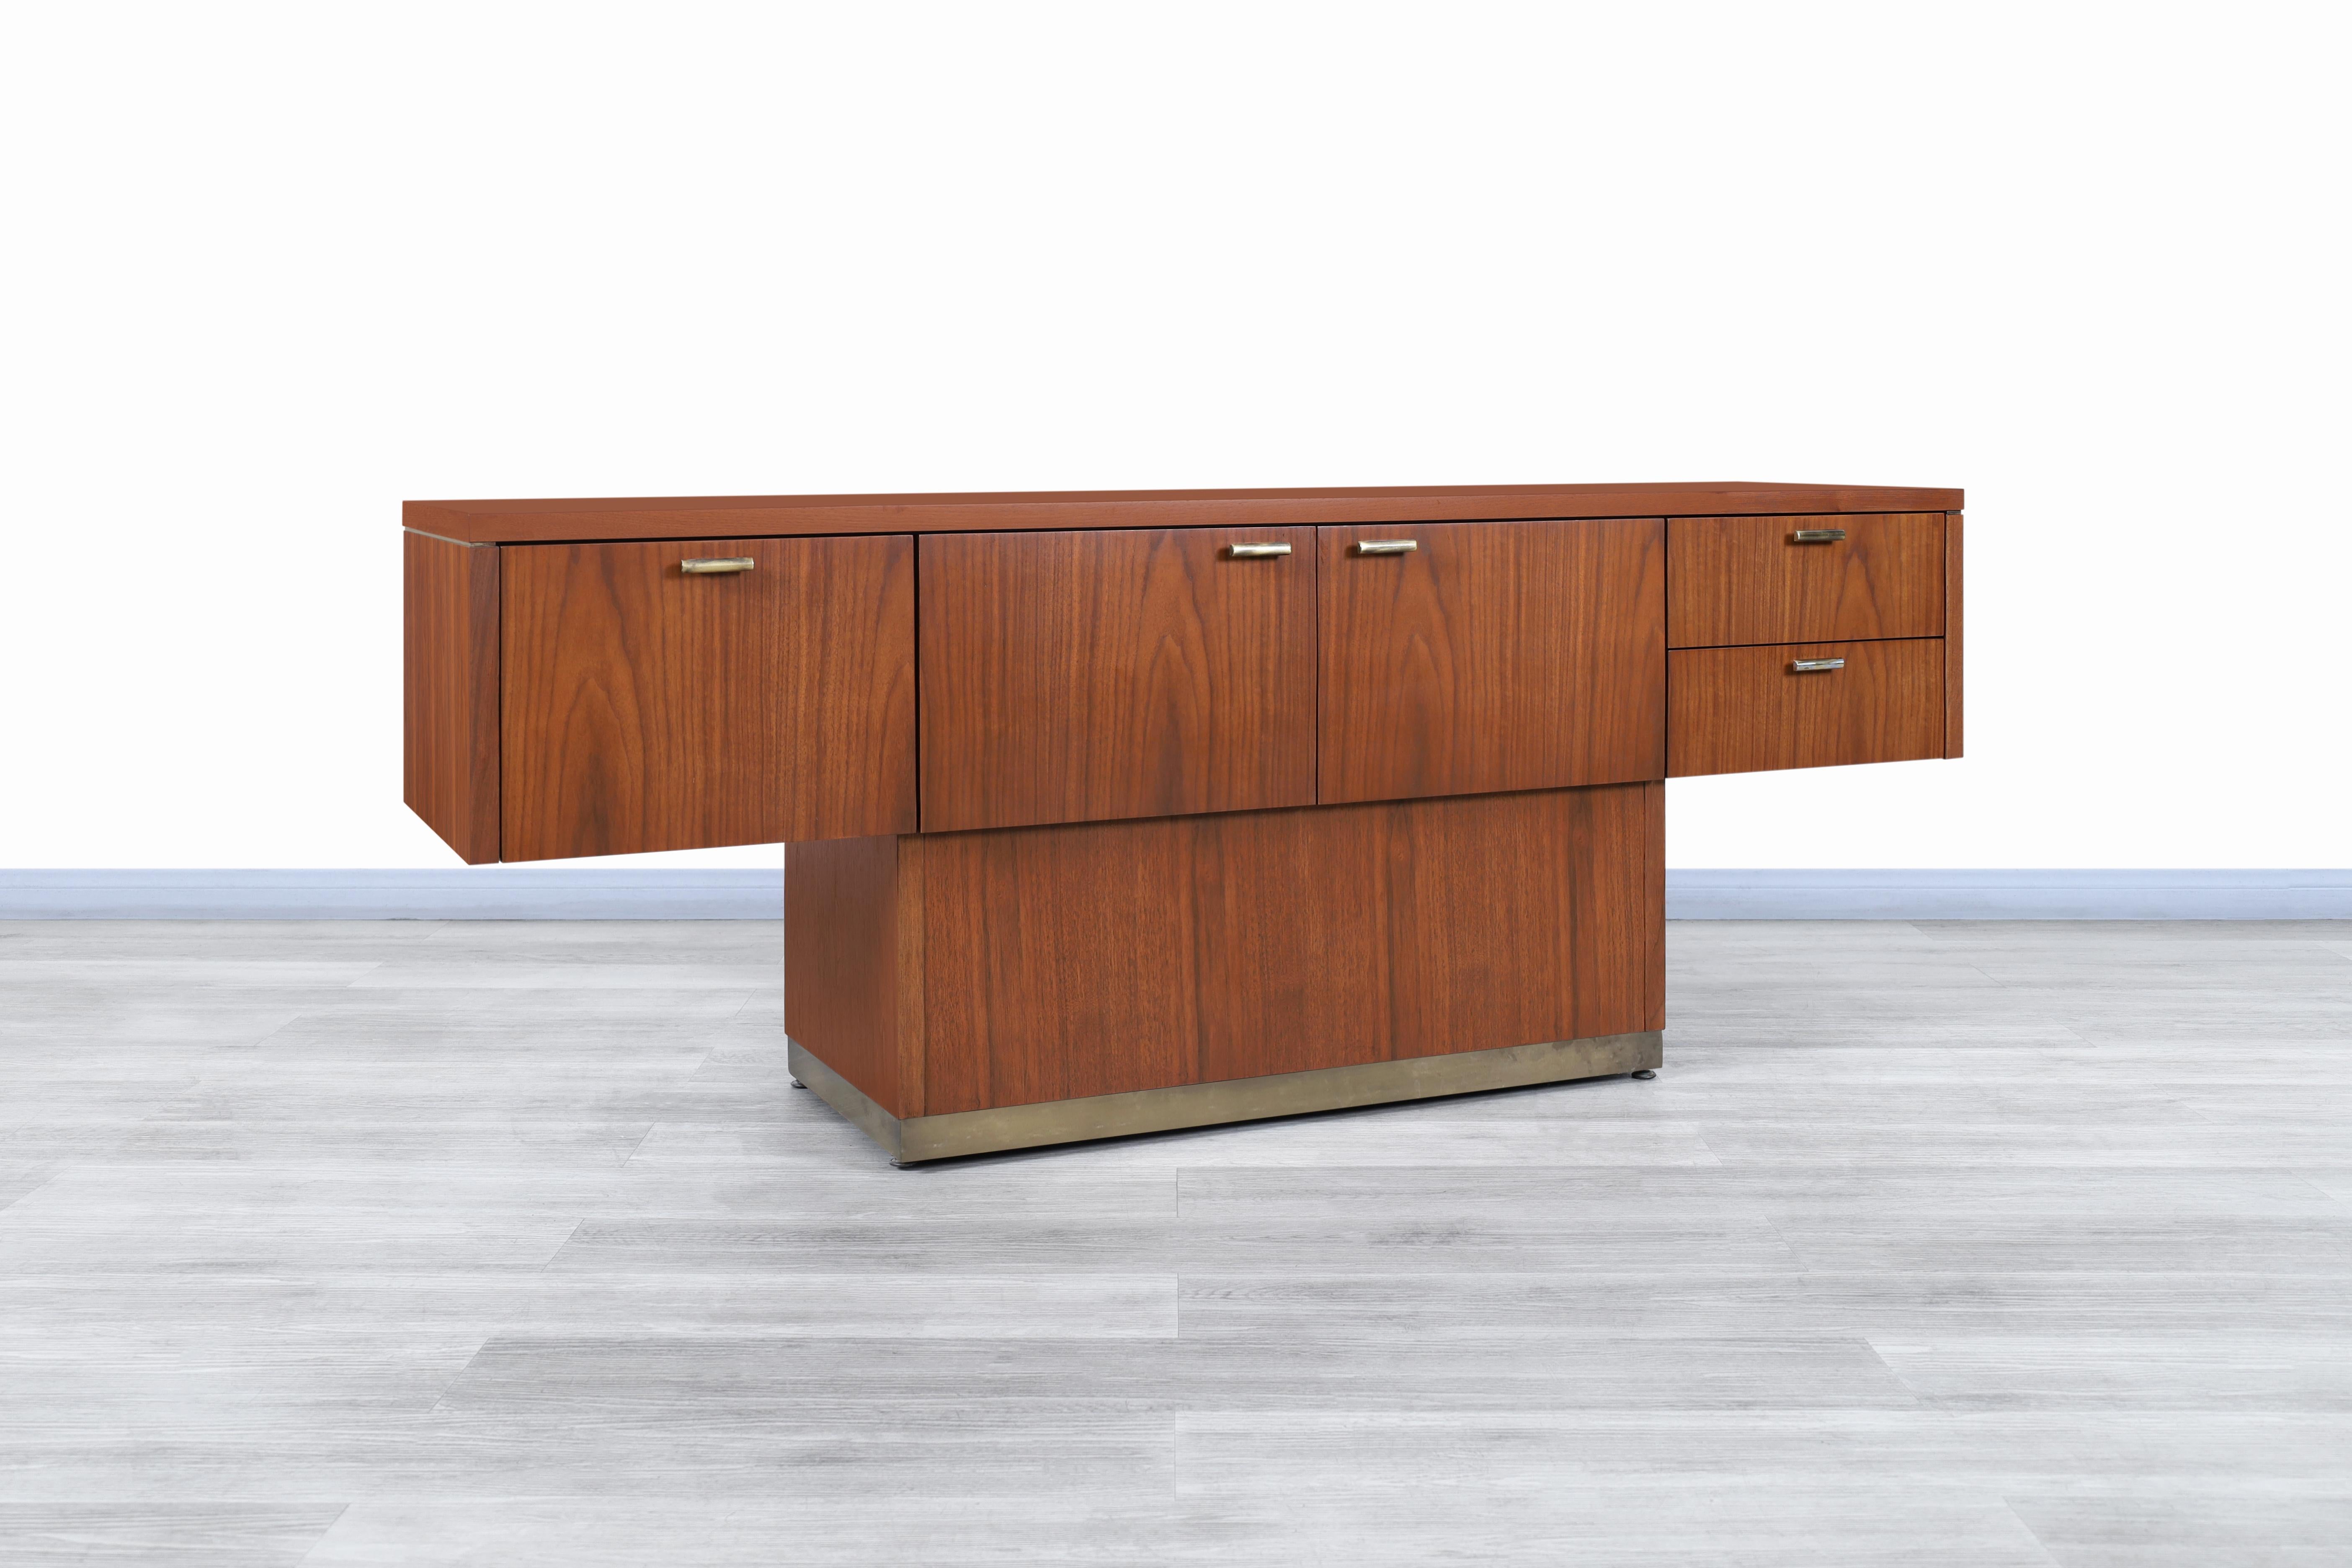 Wunderschönes freitragendes Vintage-Credenza aus Nussbaum und Messing, entworfen von Myrtle Desk Co. in den Vereinigten Staaten, ca. 1970er Jahre. Dieser Schreibtisch verfügt über ein freitragendes Design, das von einem Sockel mit massiven